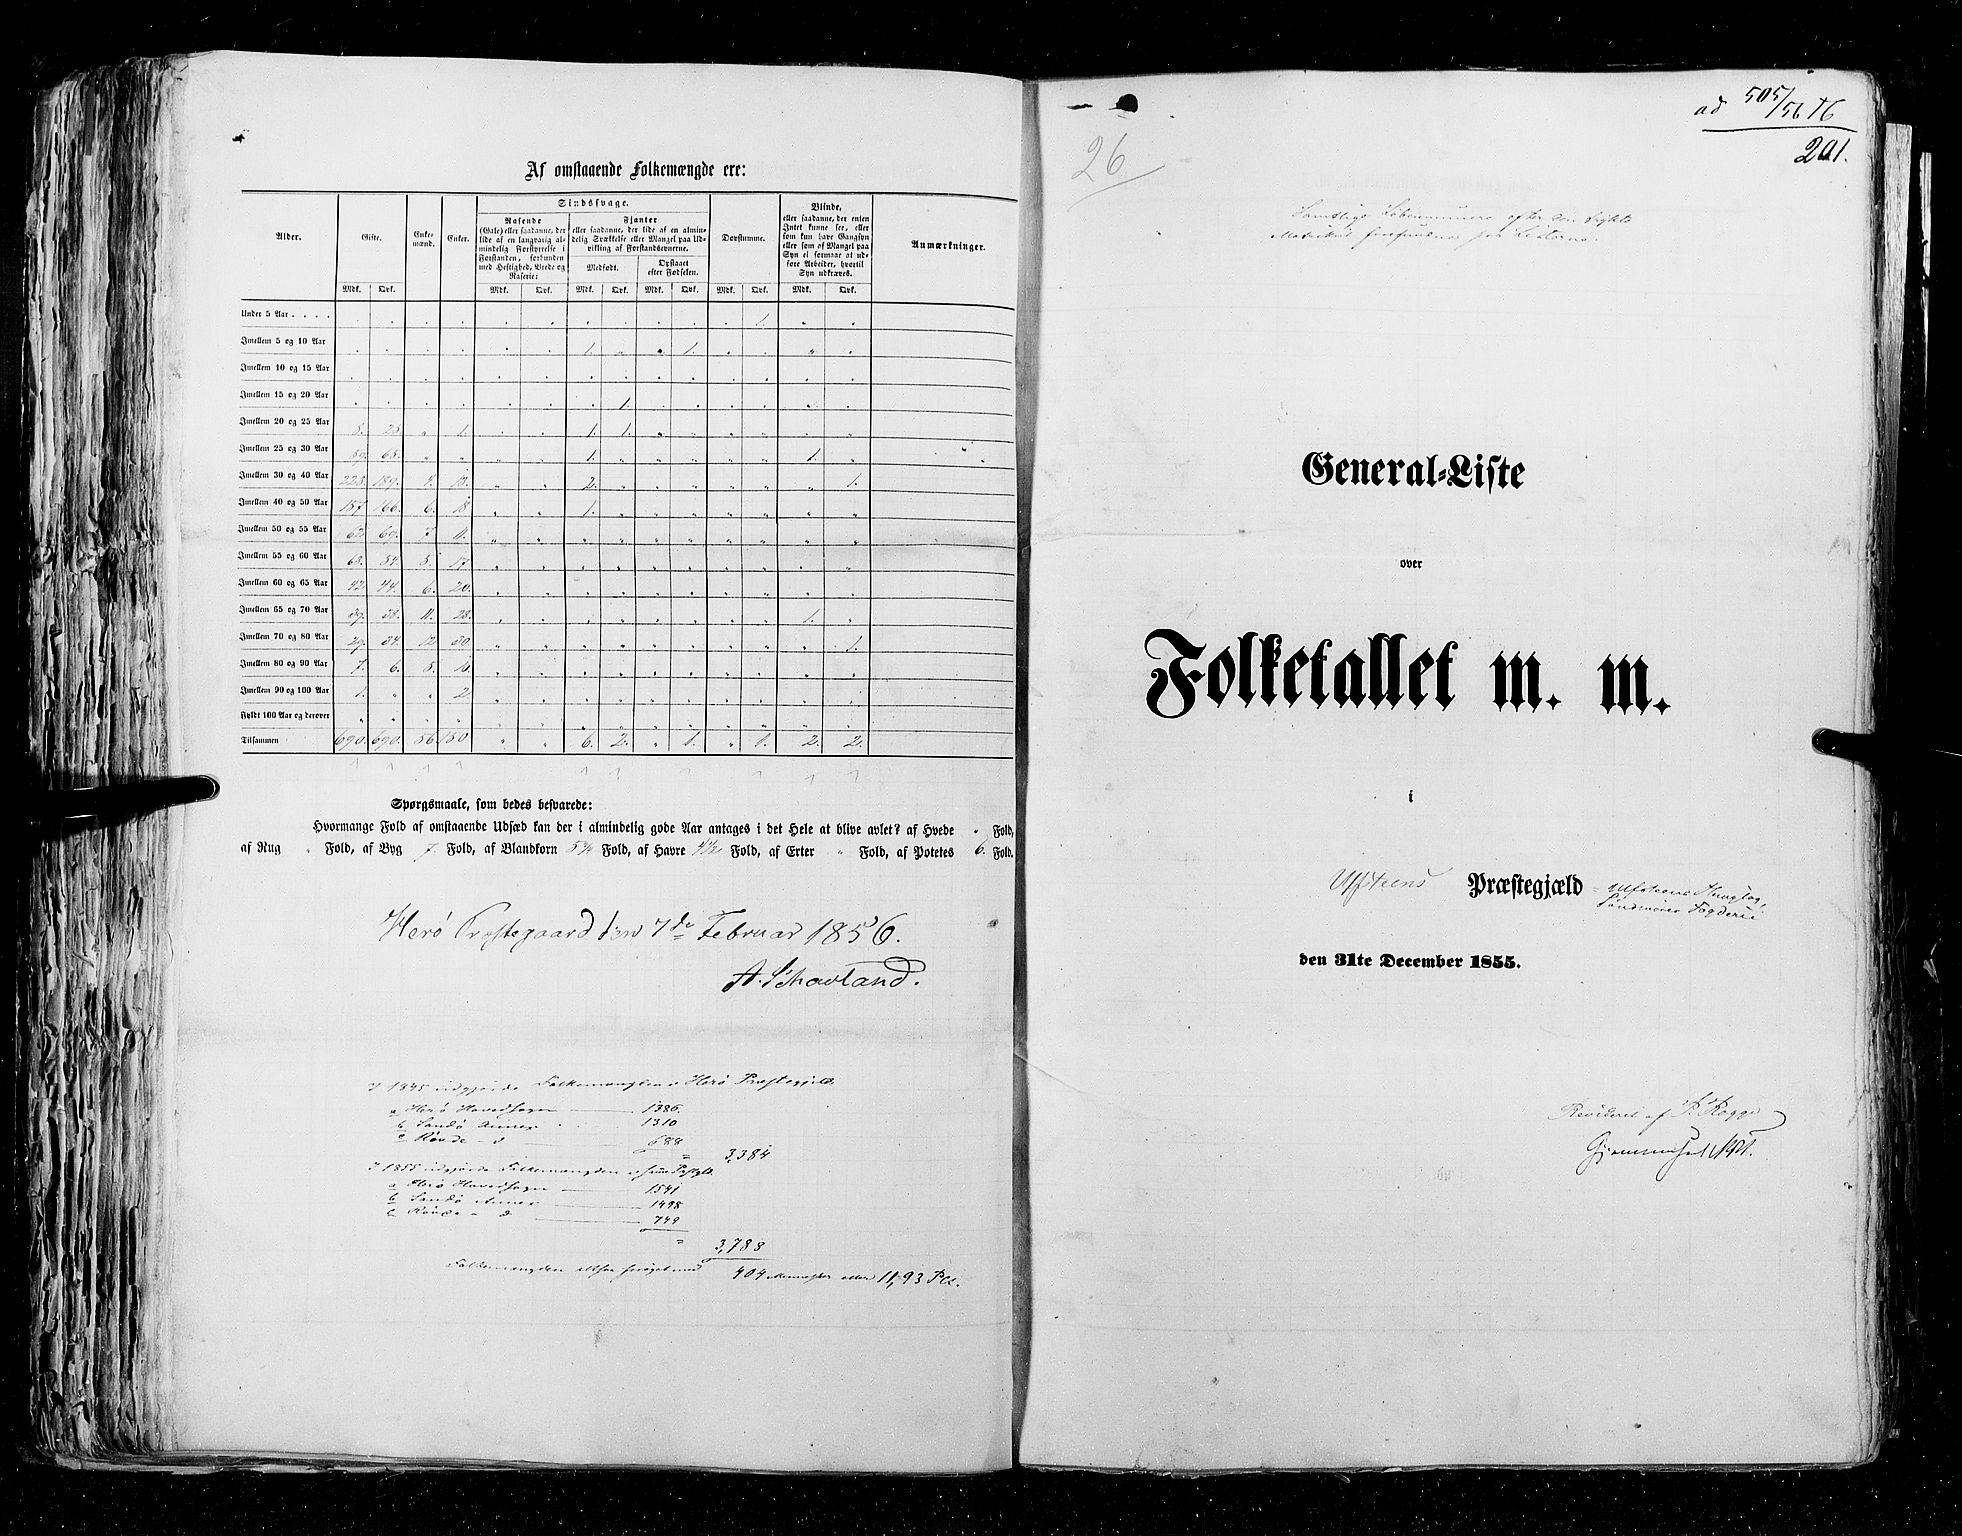 RA, Census 1855, vol. 5: Nordre Bergenhus amt, Romsdal amt og Søndre Trondhjem amt, 1855, p. 201